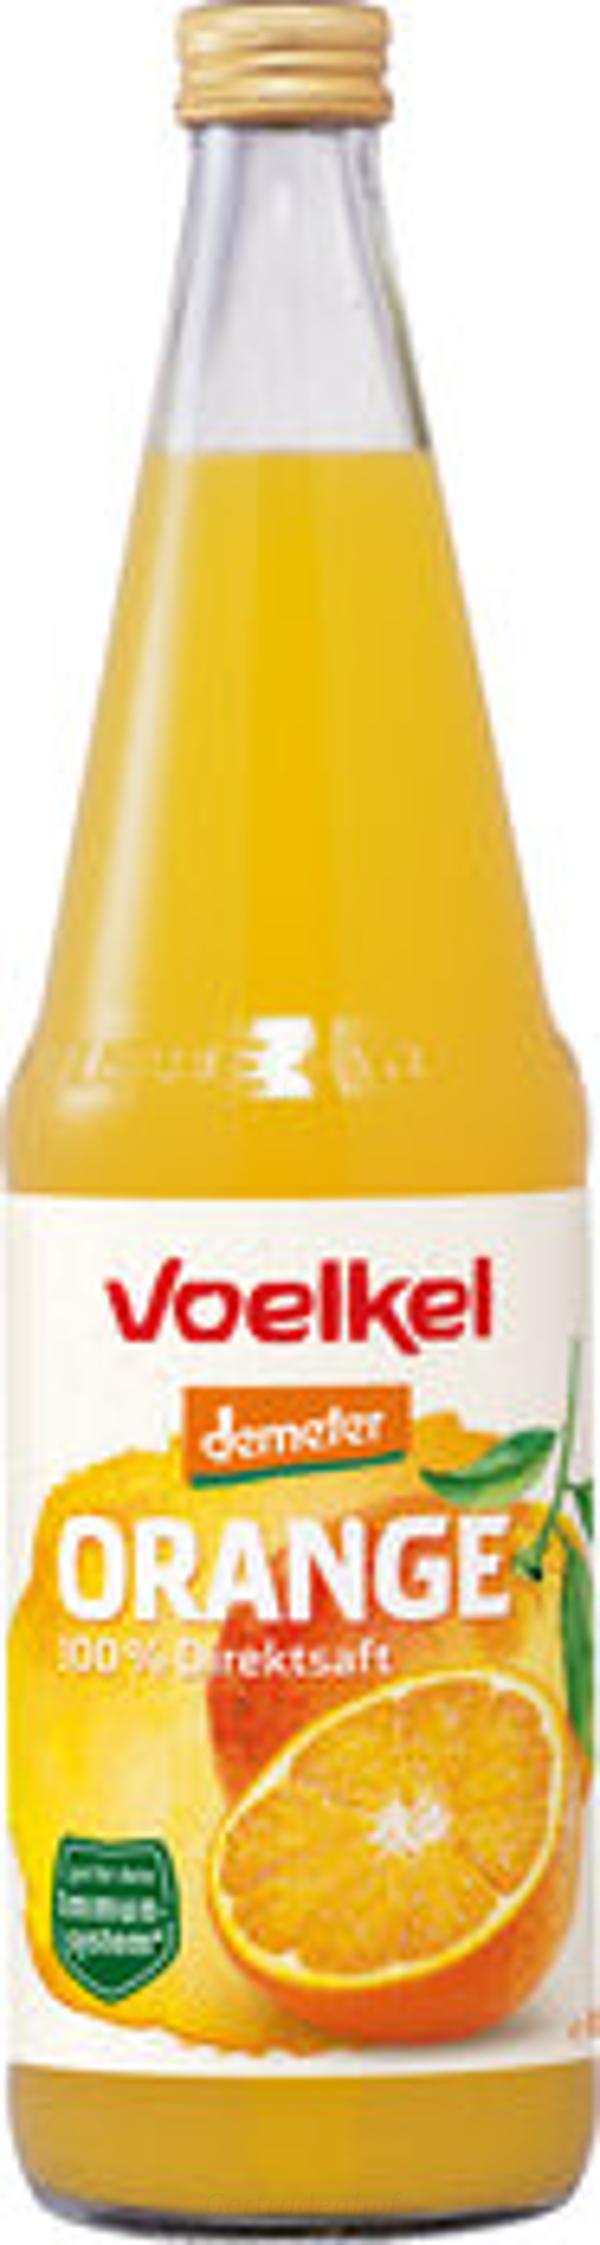 Produktfoto zu Orangensaft 0,7 l (VOE)